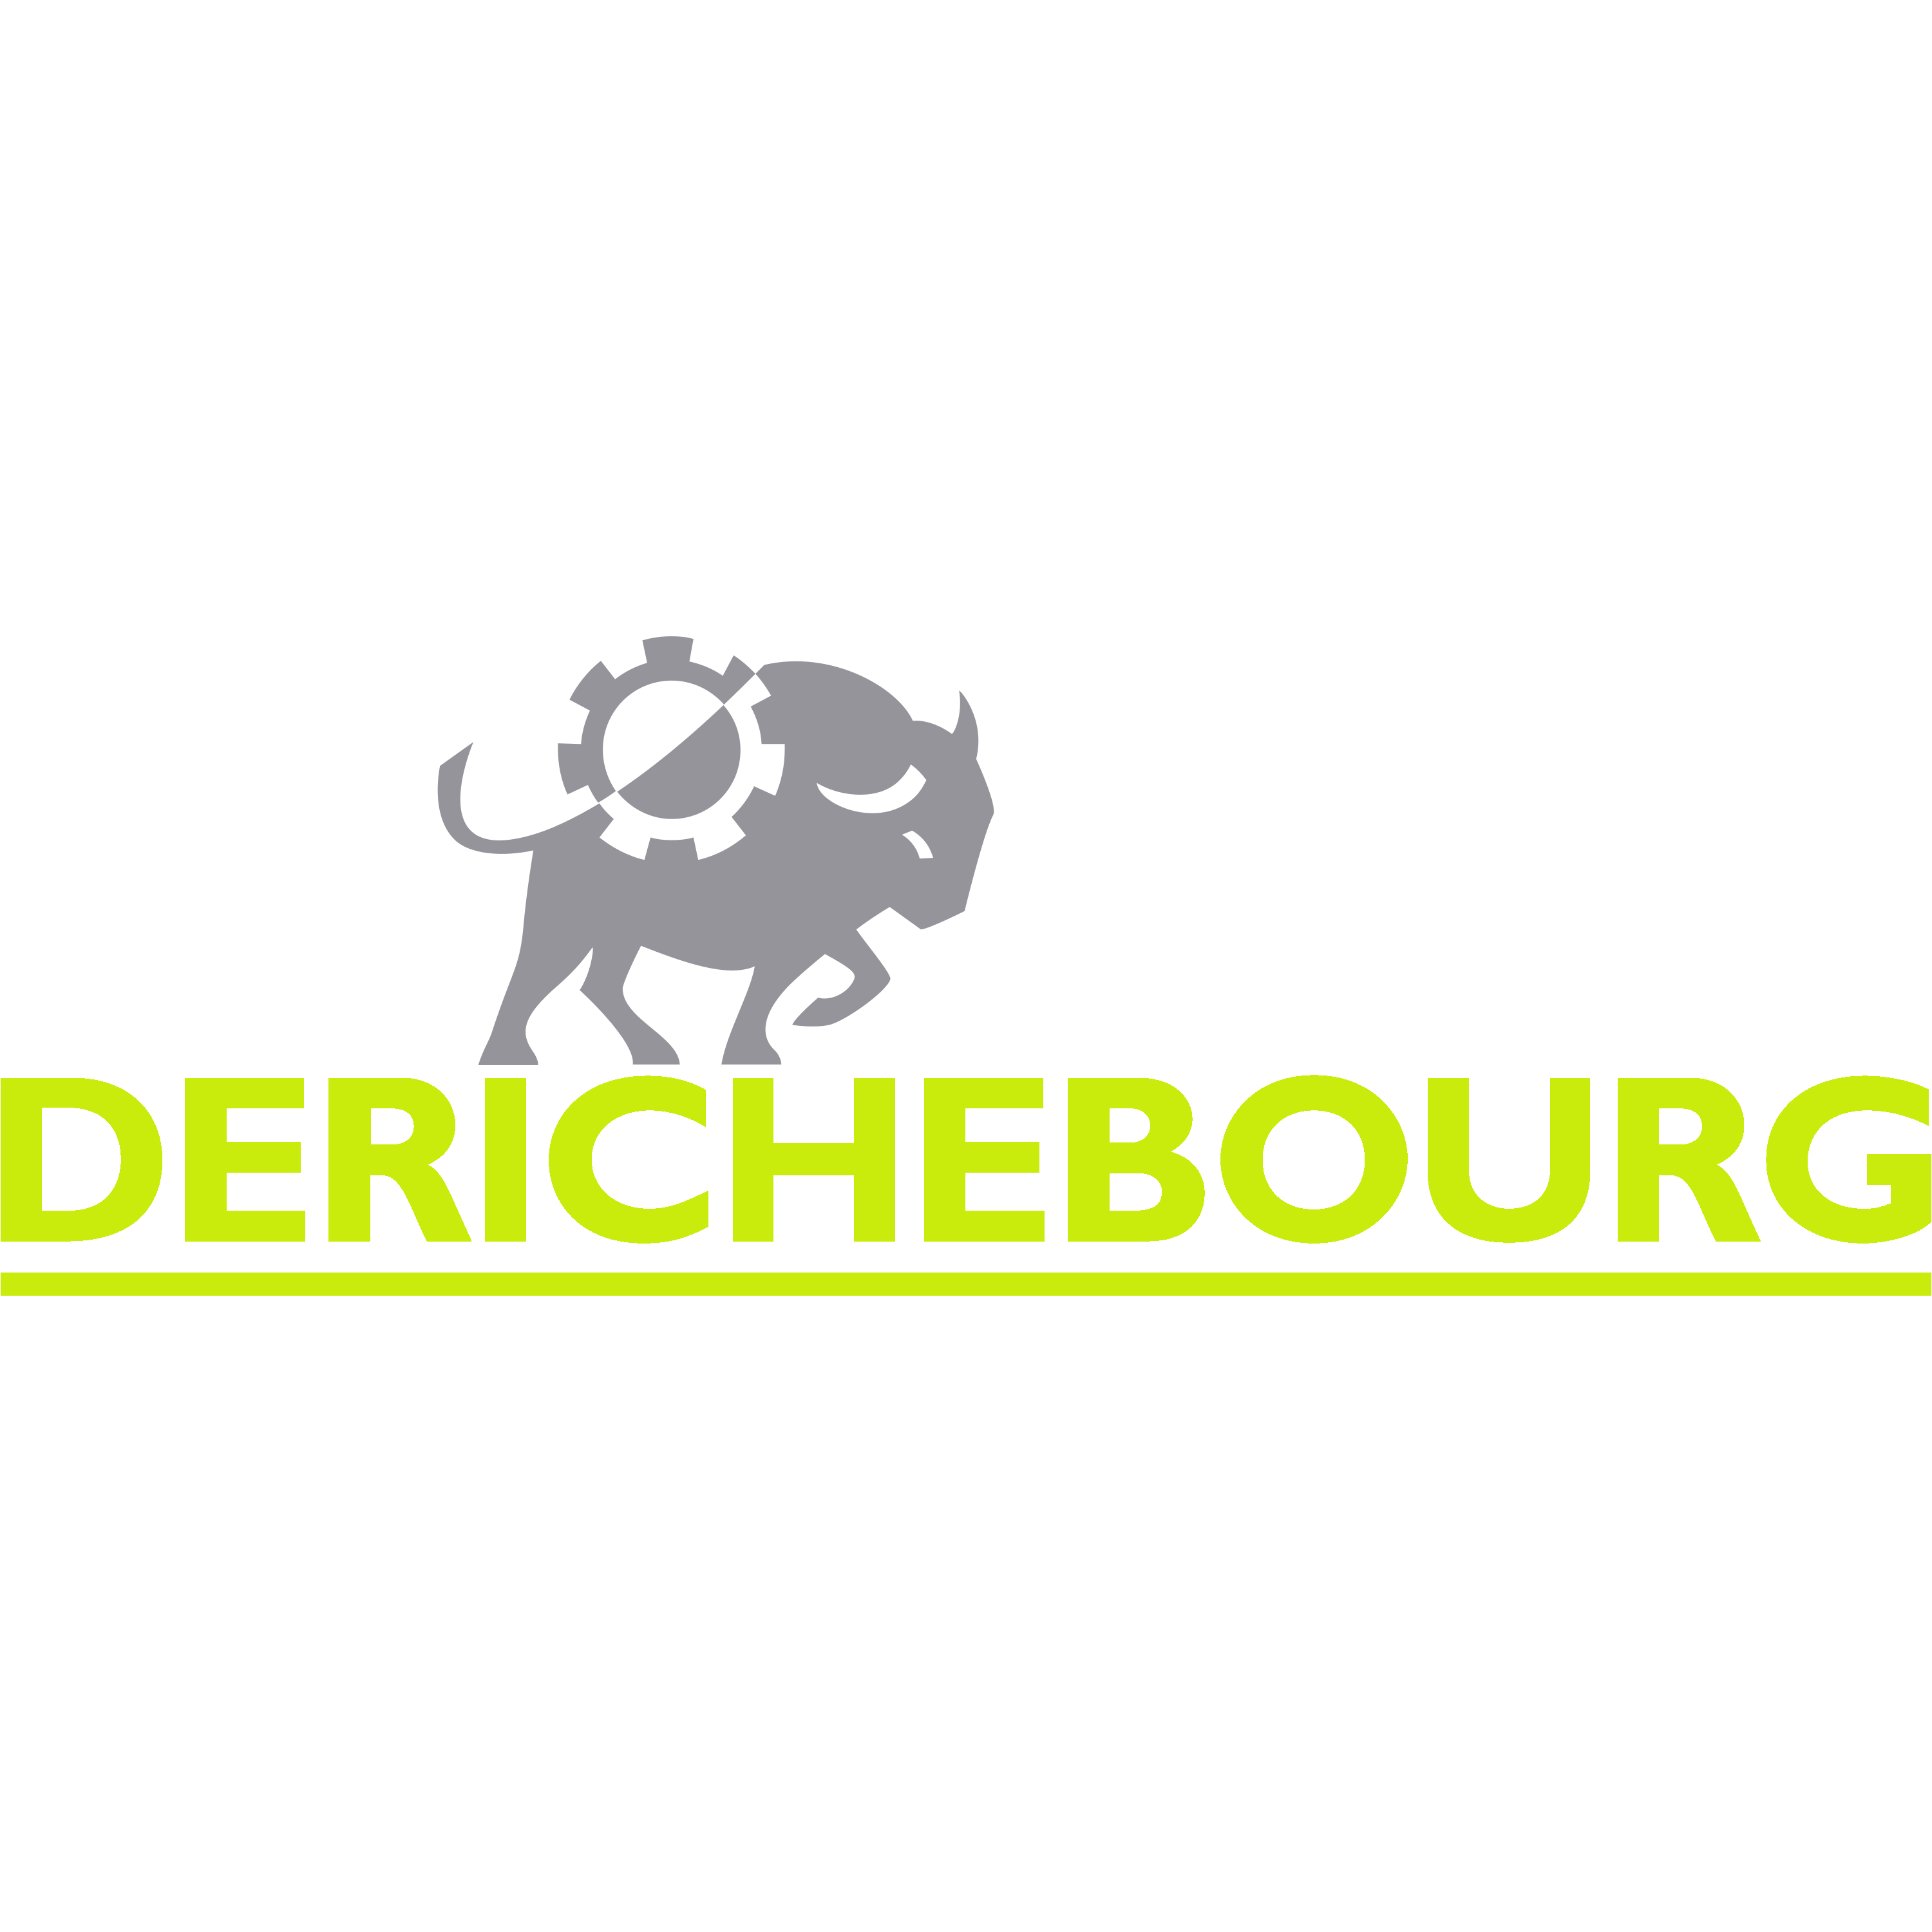 Derichebourg Logo  Transparent Gallery